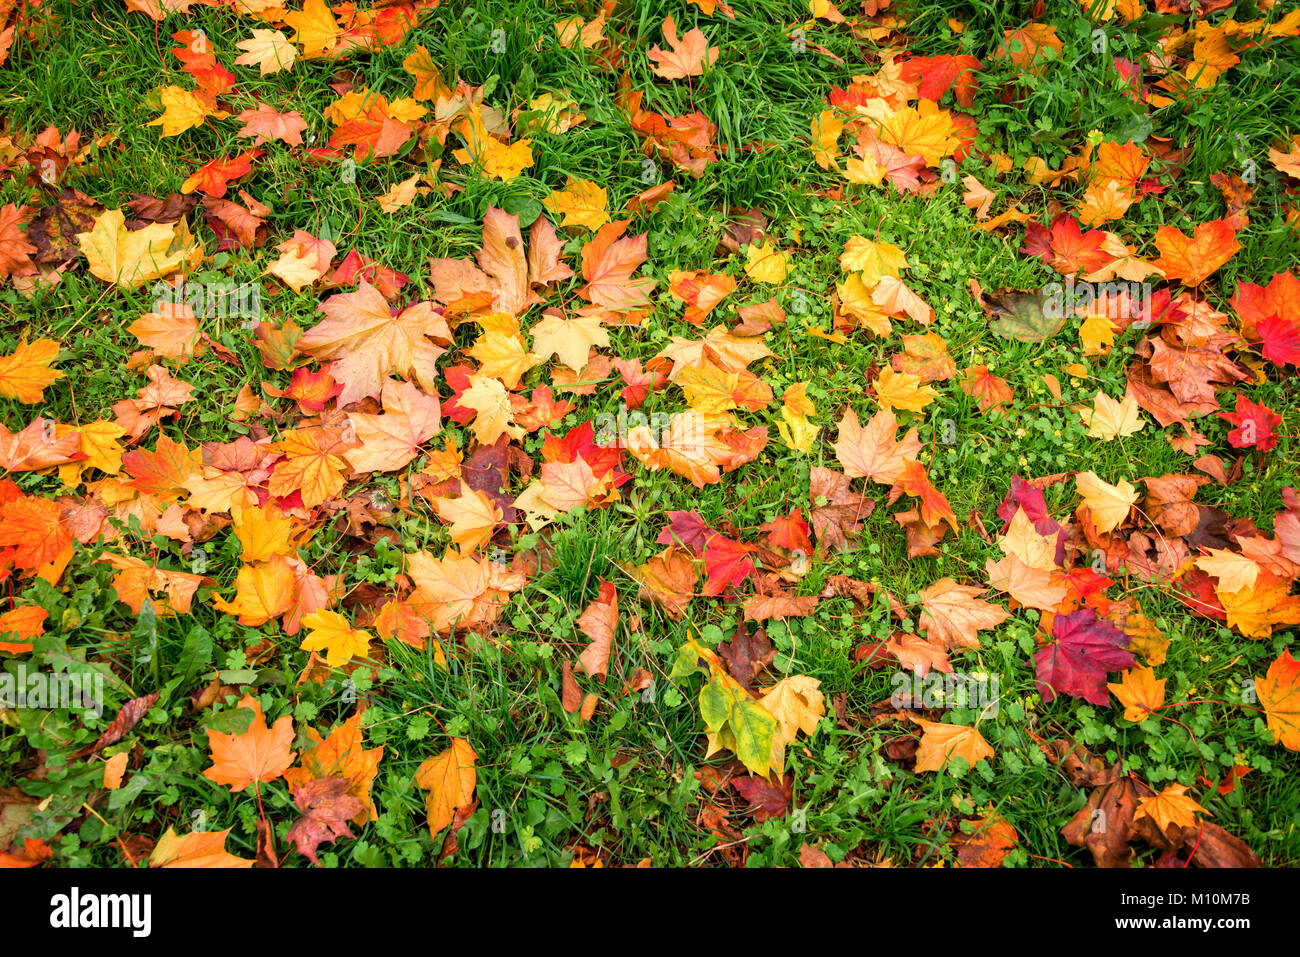 Hintergrund der bunten herbstlichen Blätter im Gras Stockfoto